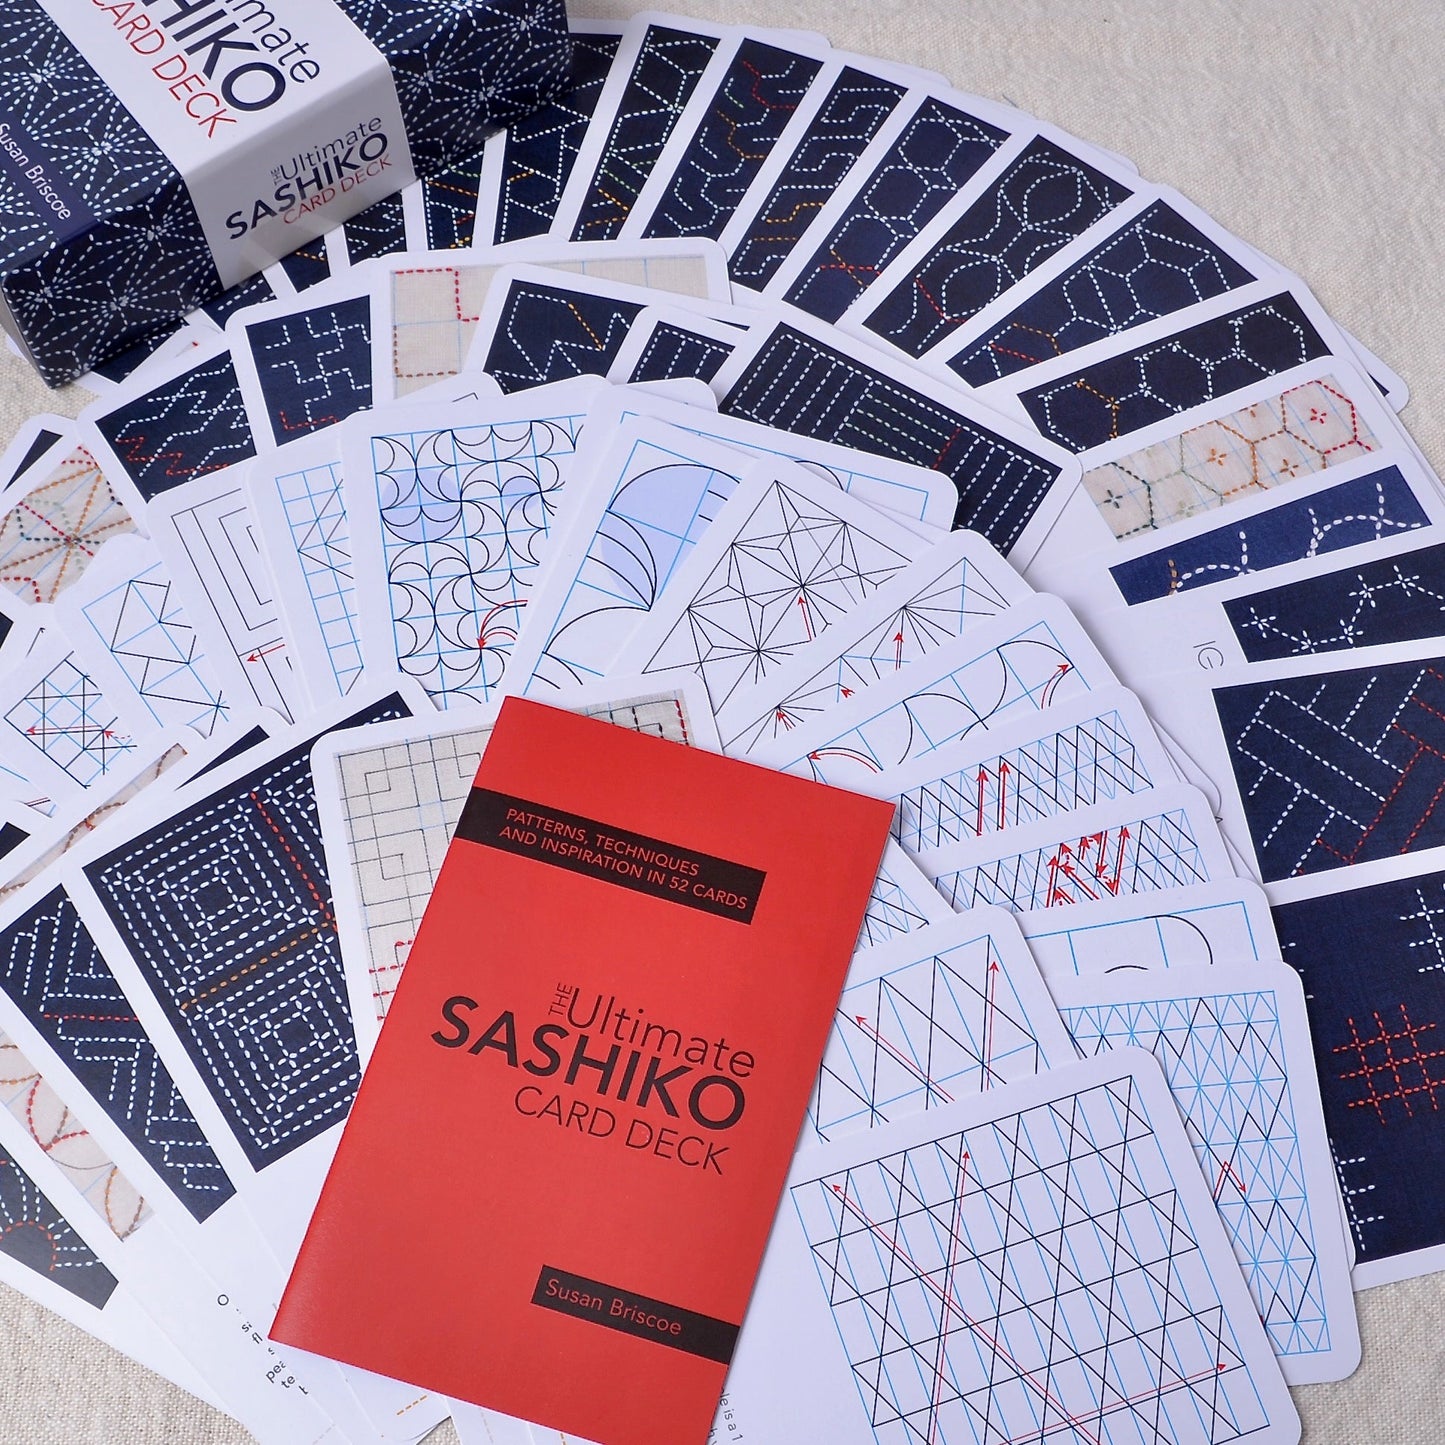 Ultimate Sashiko Card Deck